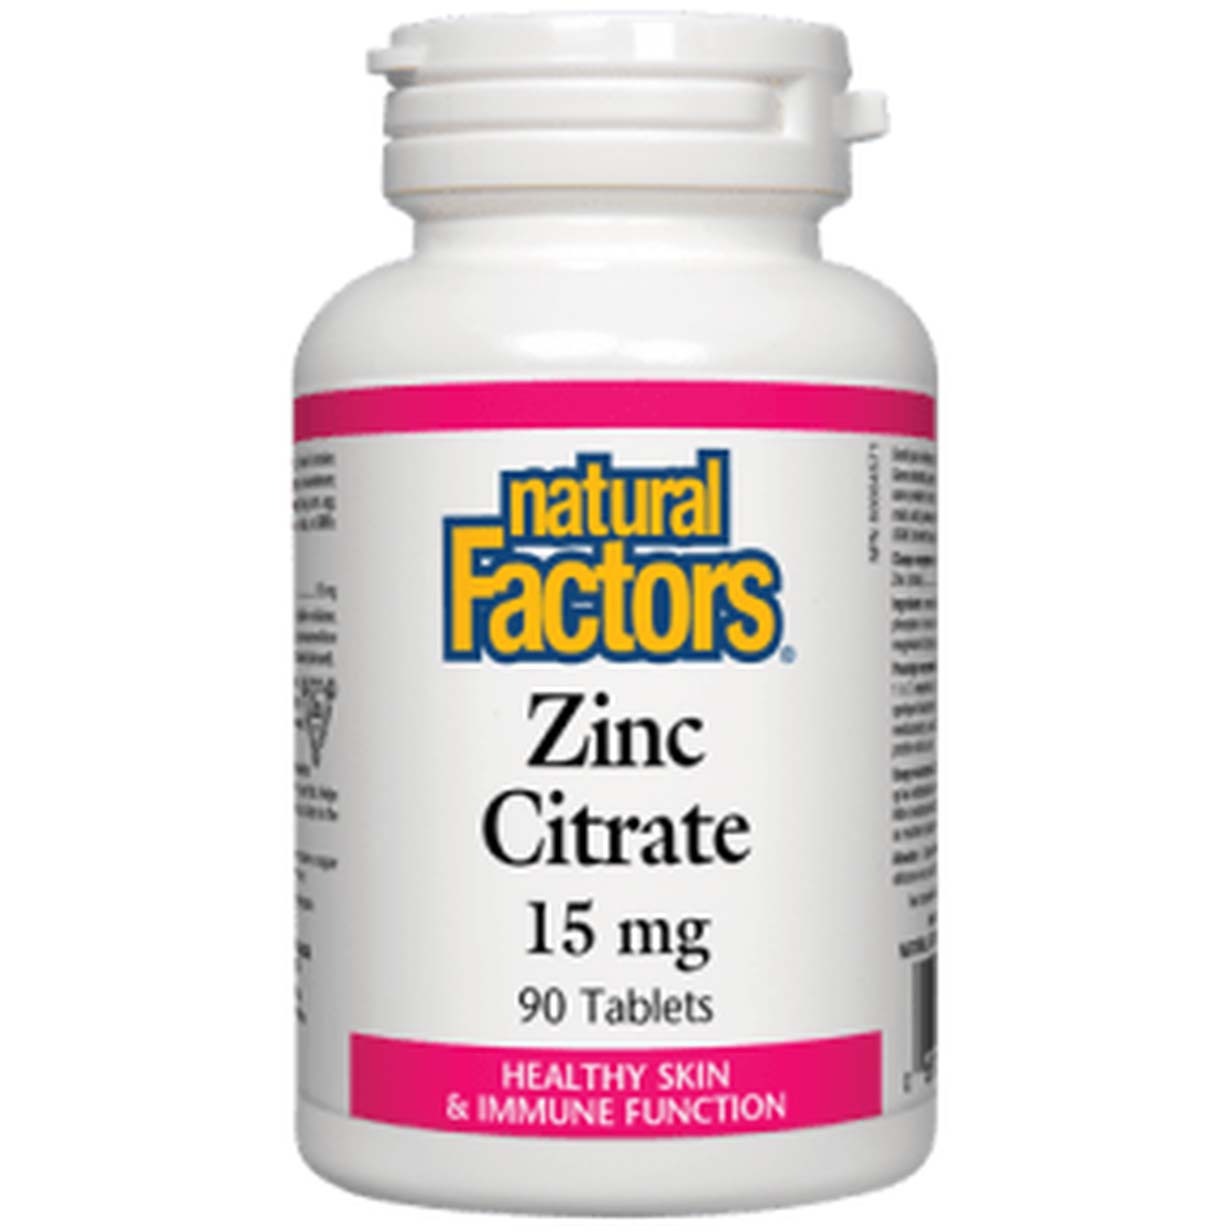 Natural Factors Zinc Citrate, 90 Tablets, 15 mg